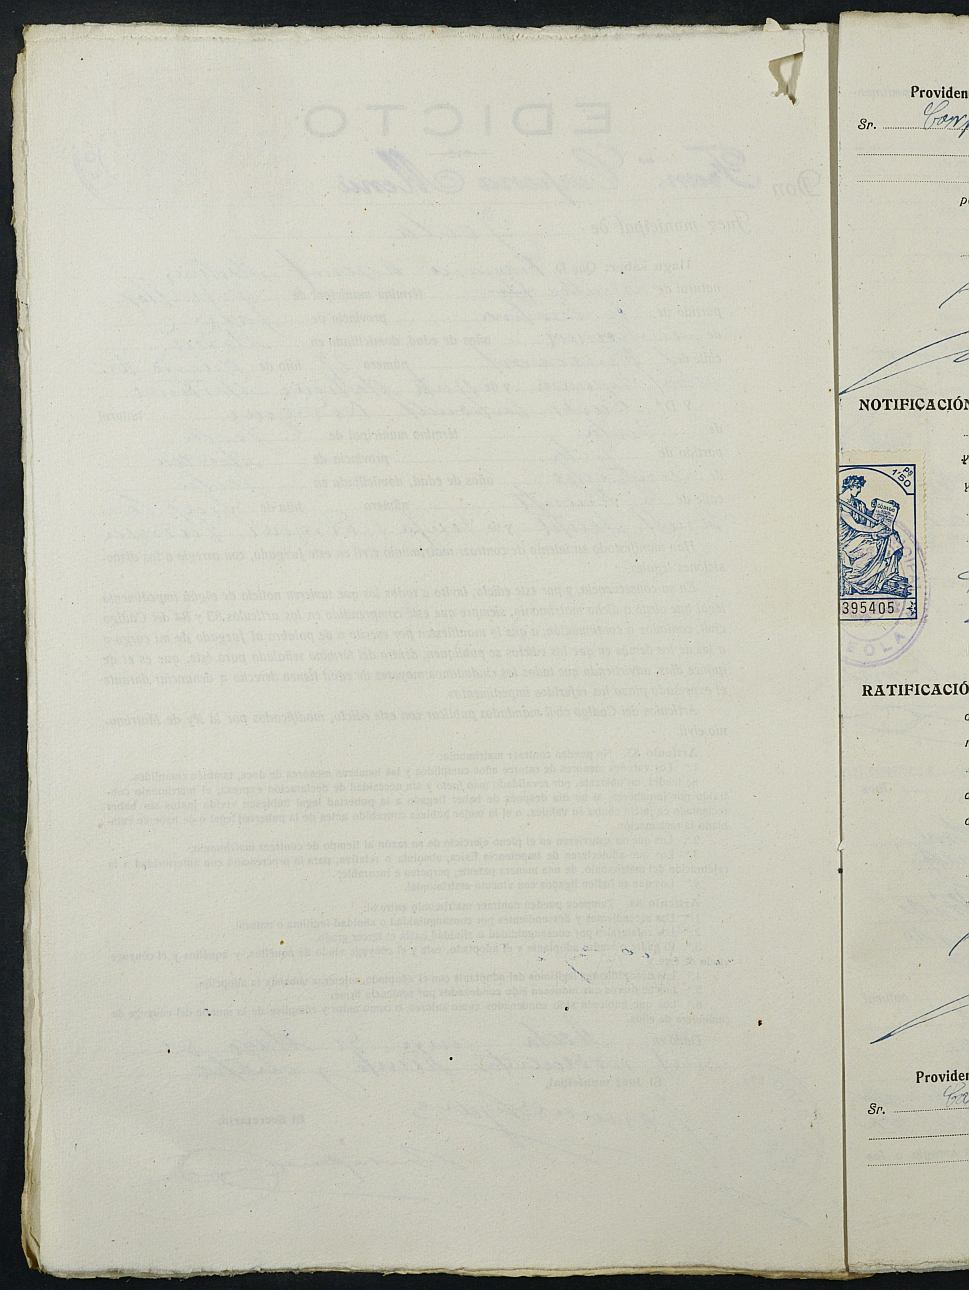 Expediente nº 32 para la inscripción de matrimonio civil en el Registro Civil de Yecla entre Francisco Arsenal Martínez y Nieves Carbonell Rodríguez.